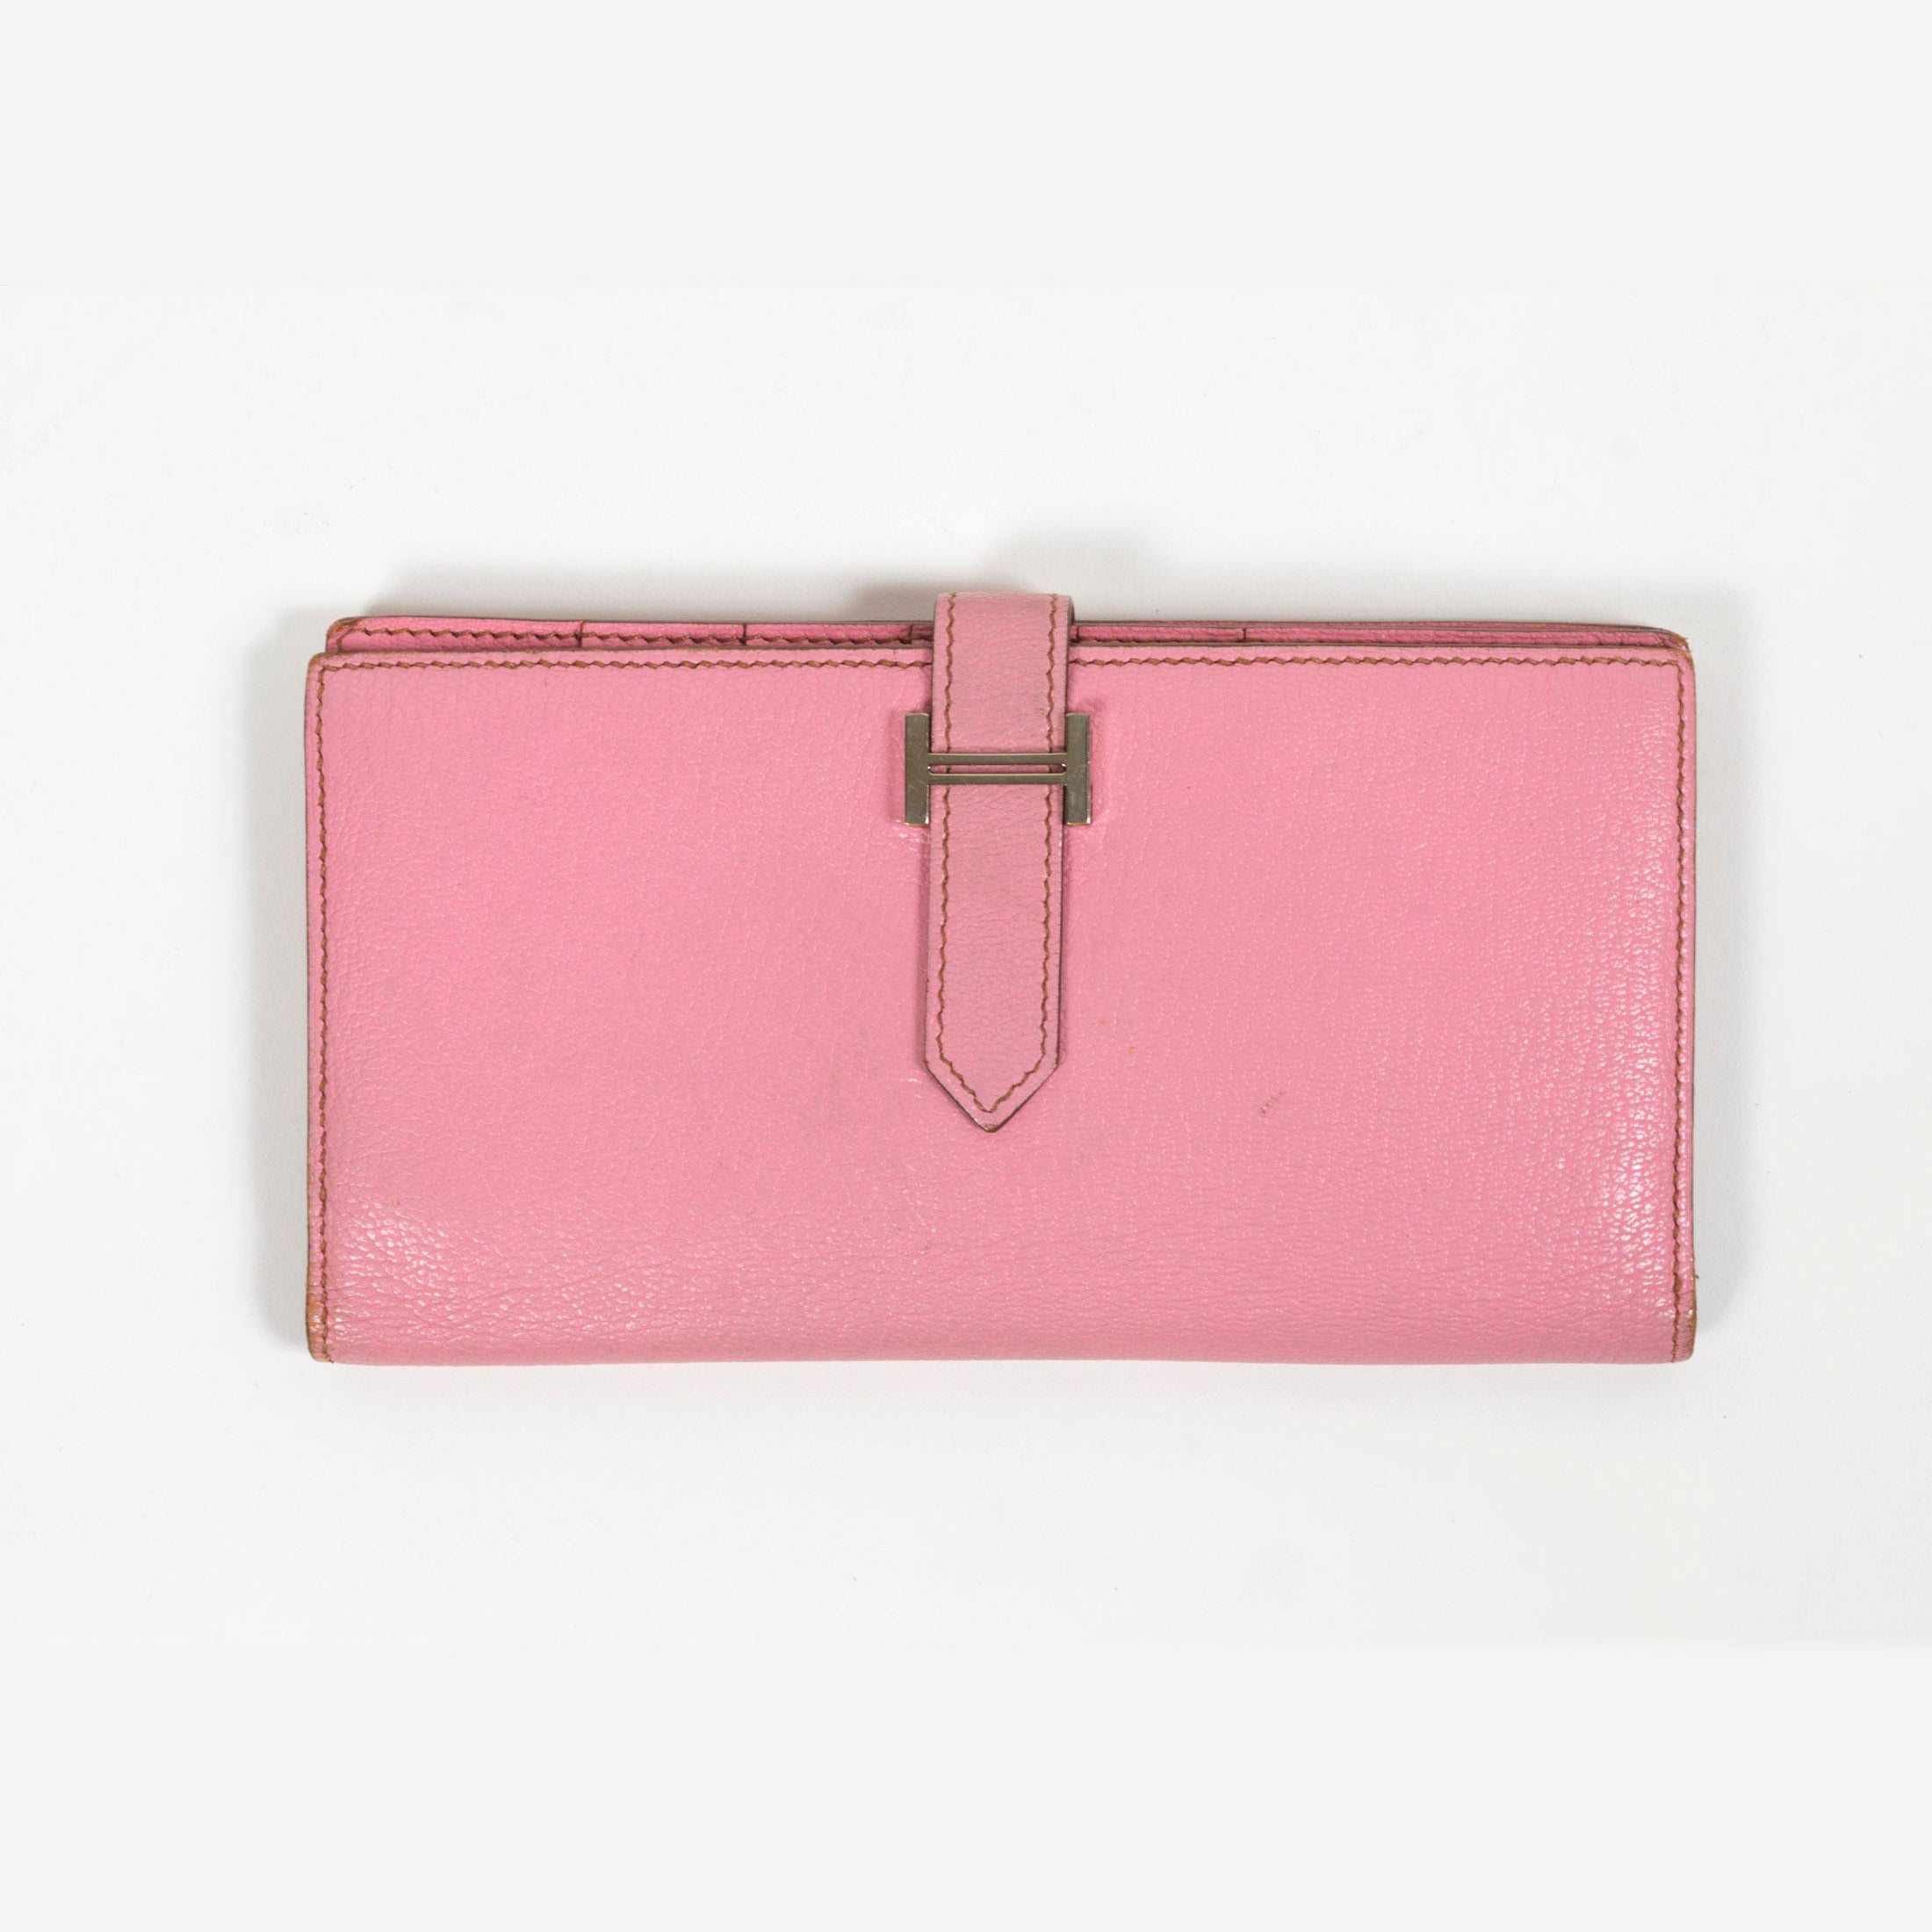 Hermès Pink Bearn Goatskin Wallet with Palladium Hardware